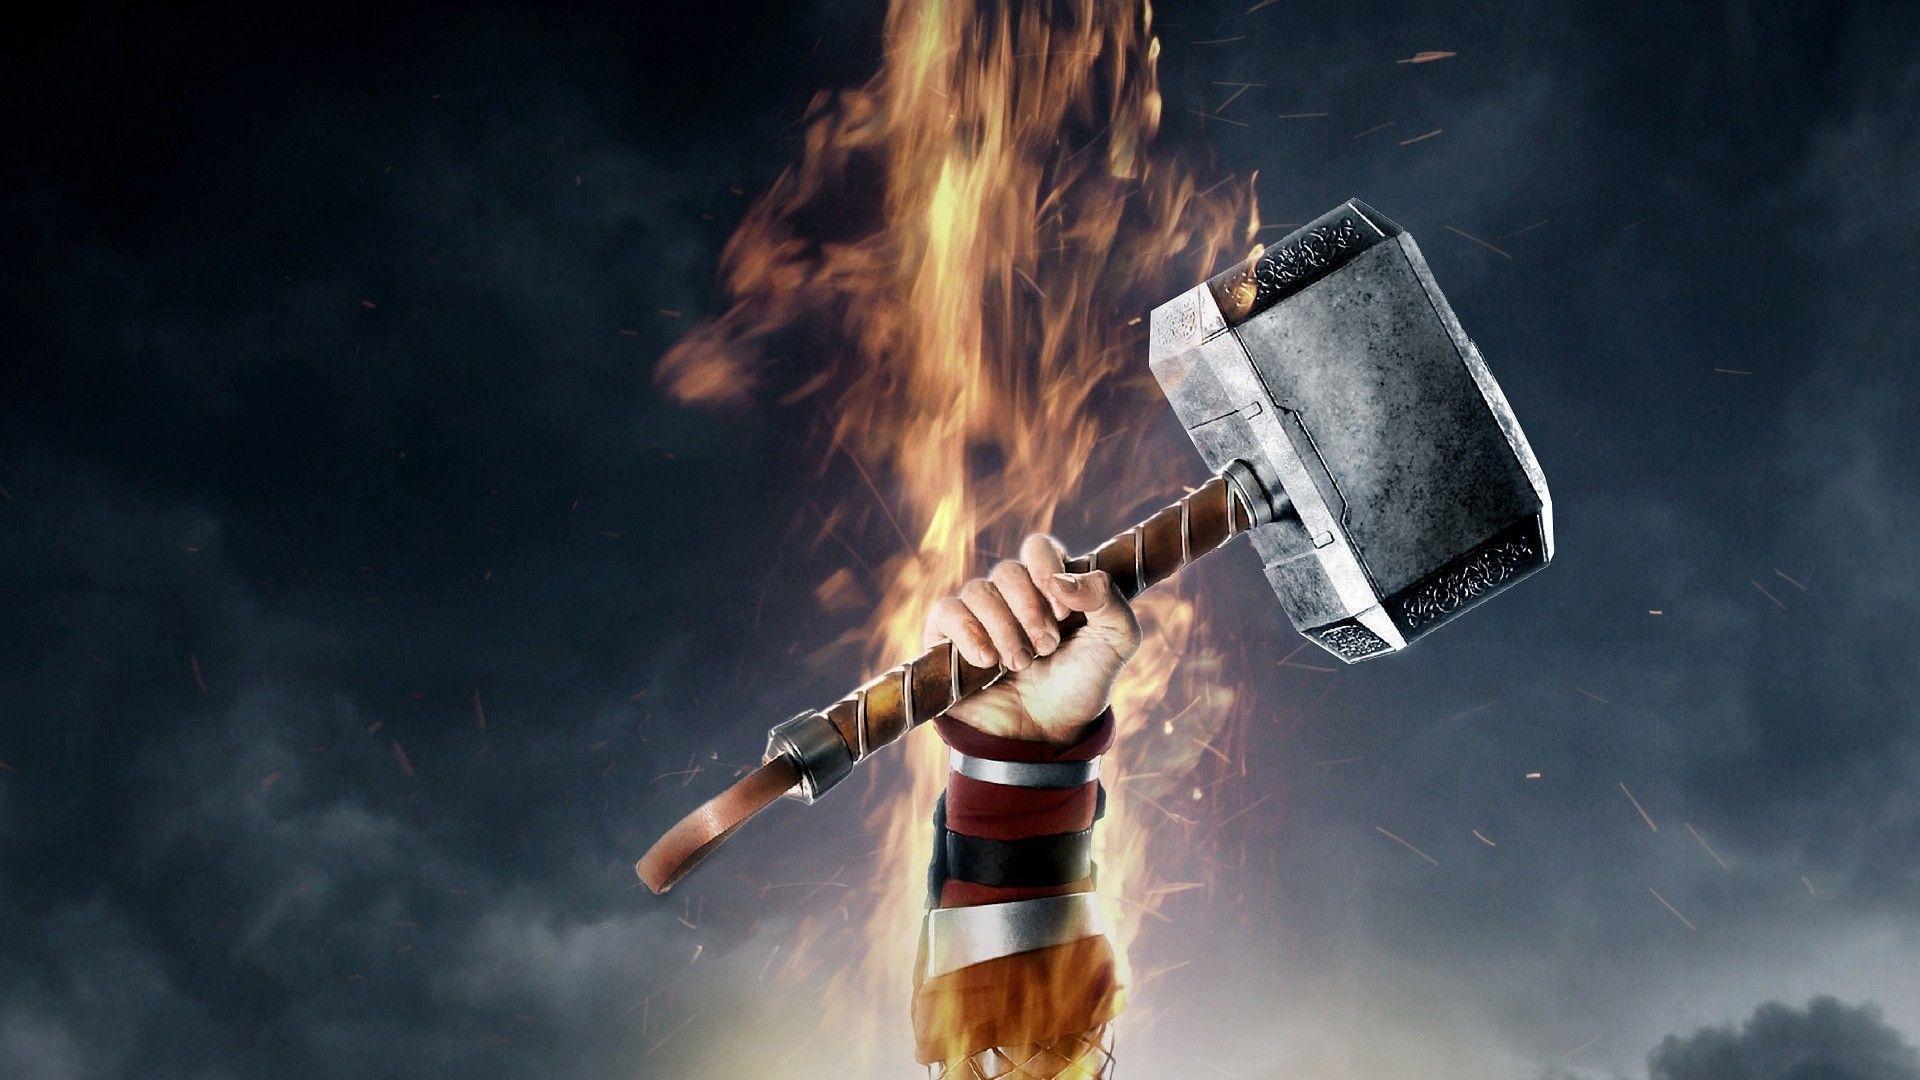 Thor's Hammer Mjolnir Wallpaper Free Thor's Hammer